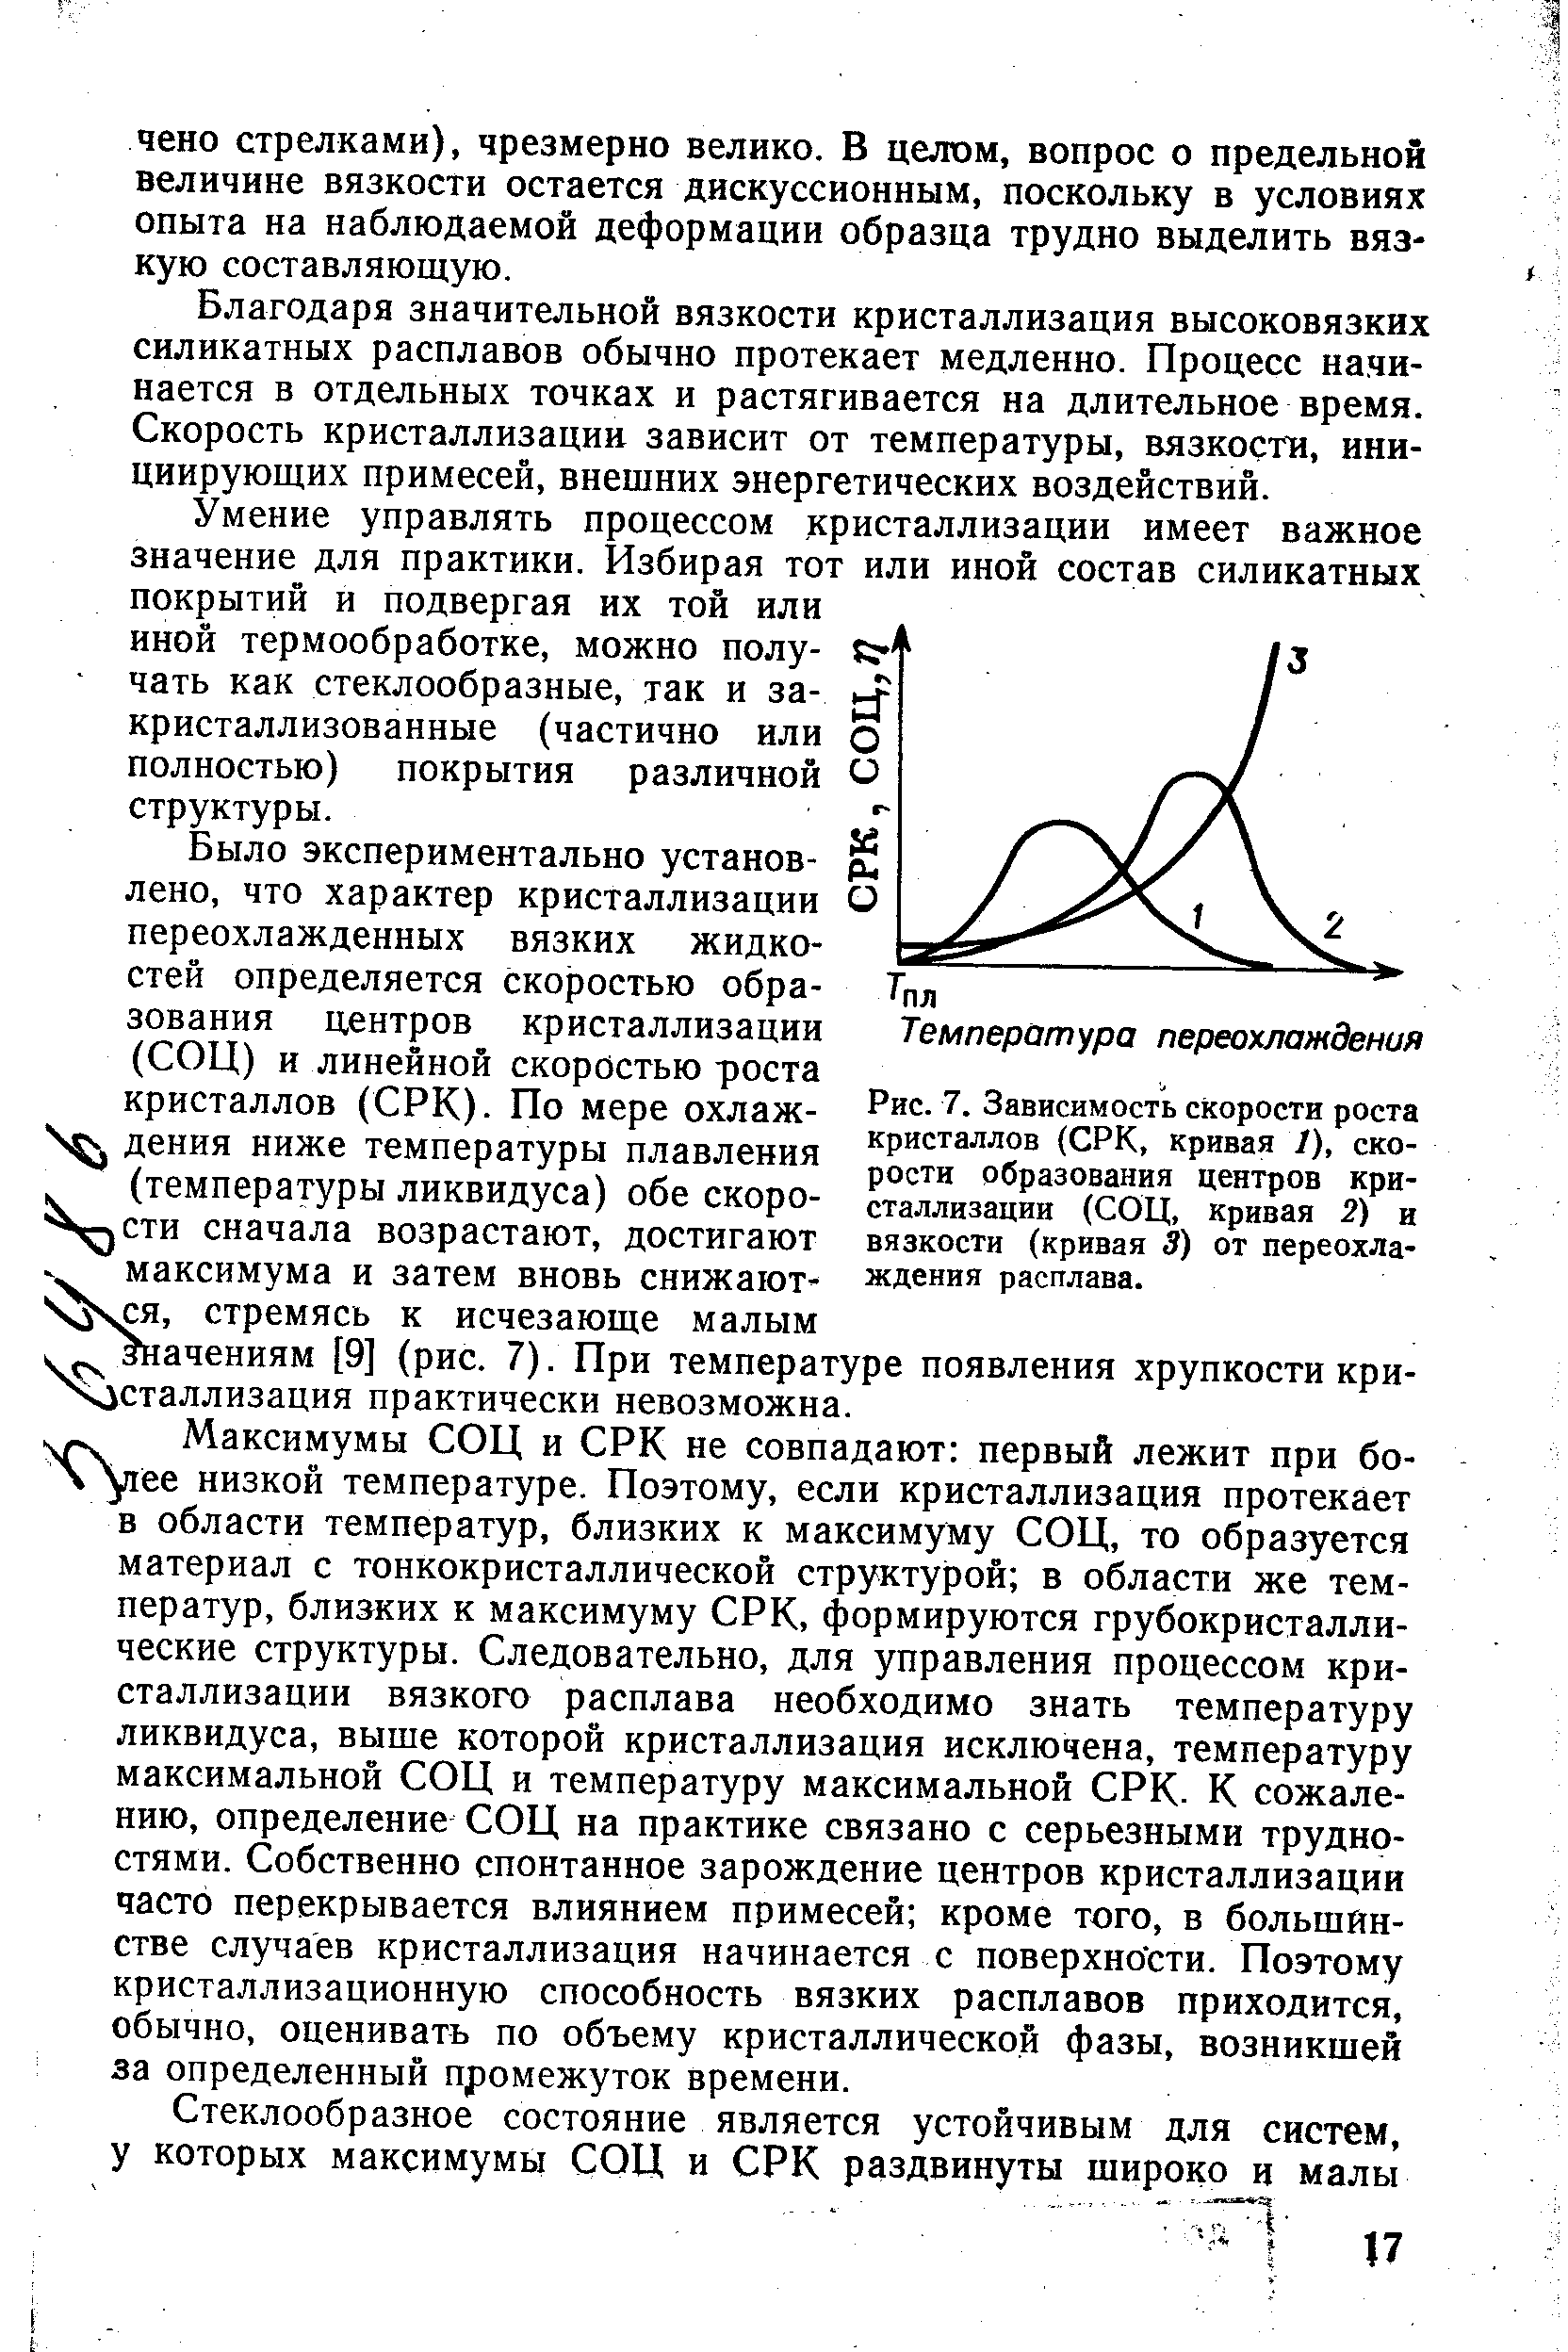 Рис. 7. Зависимость <a href="/info/1573">скорости роста кристаллов</a> (СРК, кривая 1), скорости образования центров кристаллизации (СОЦ, Кривая 2) и вязкости (кривая 3) от переохлаждения расплава.
